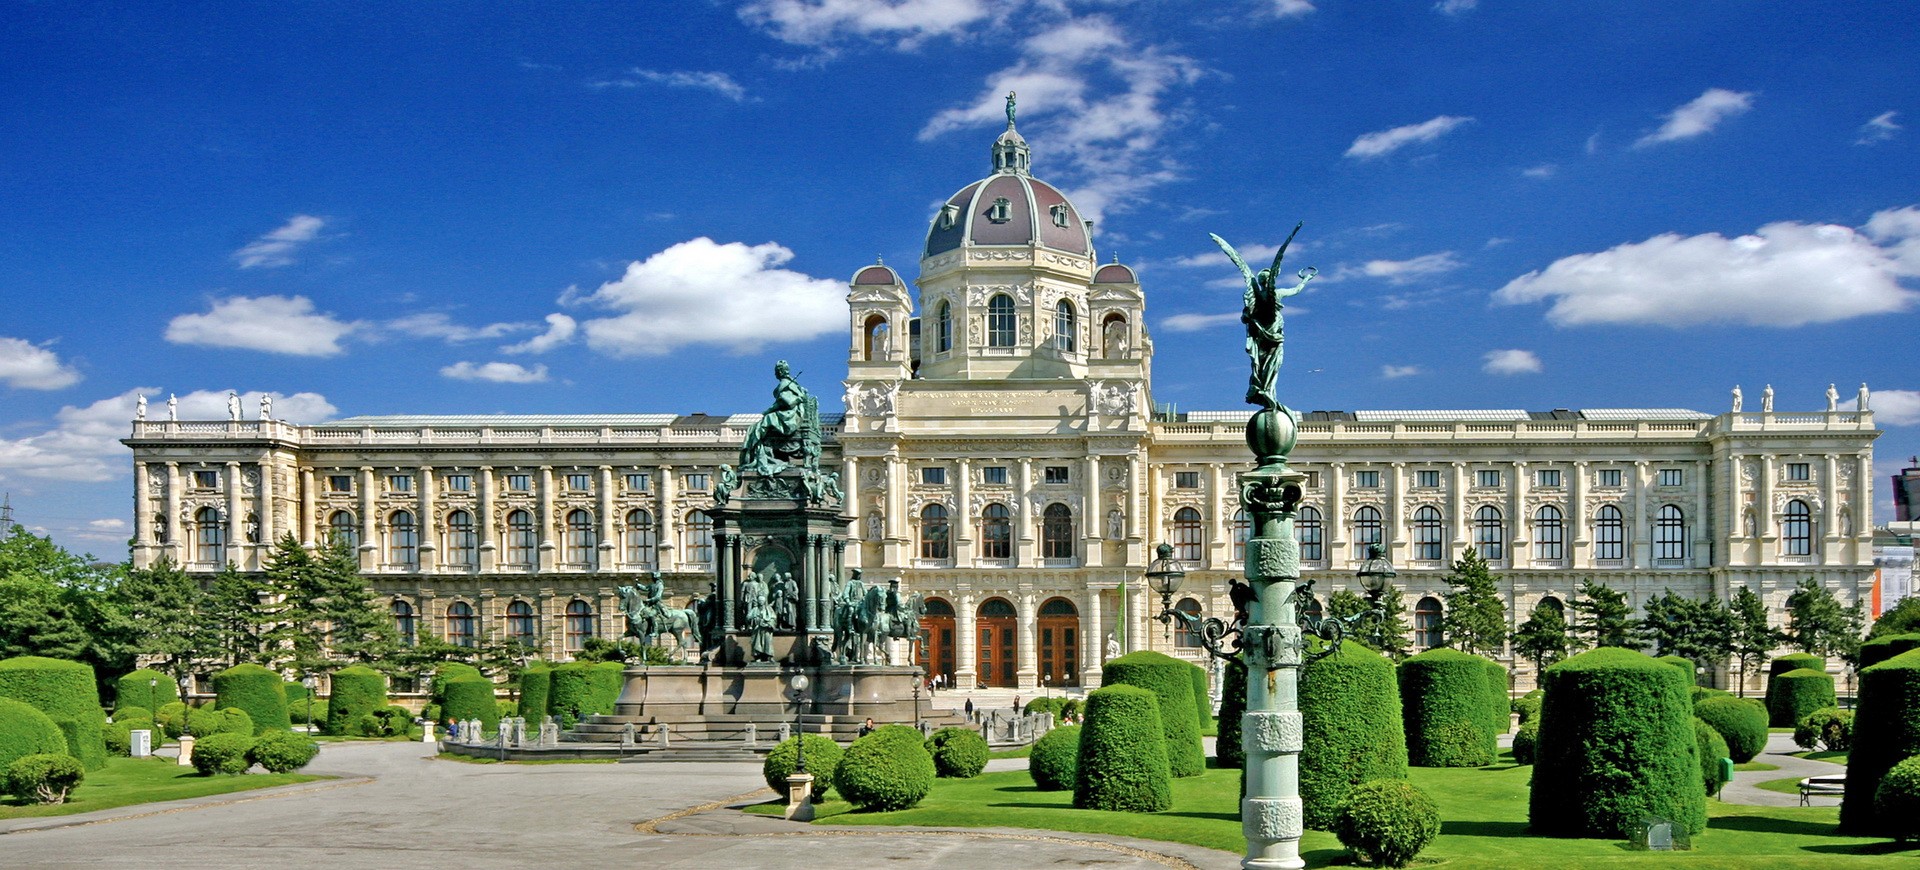 Autriche Vienne Kunsthistorisches  Musée